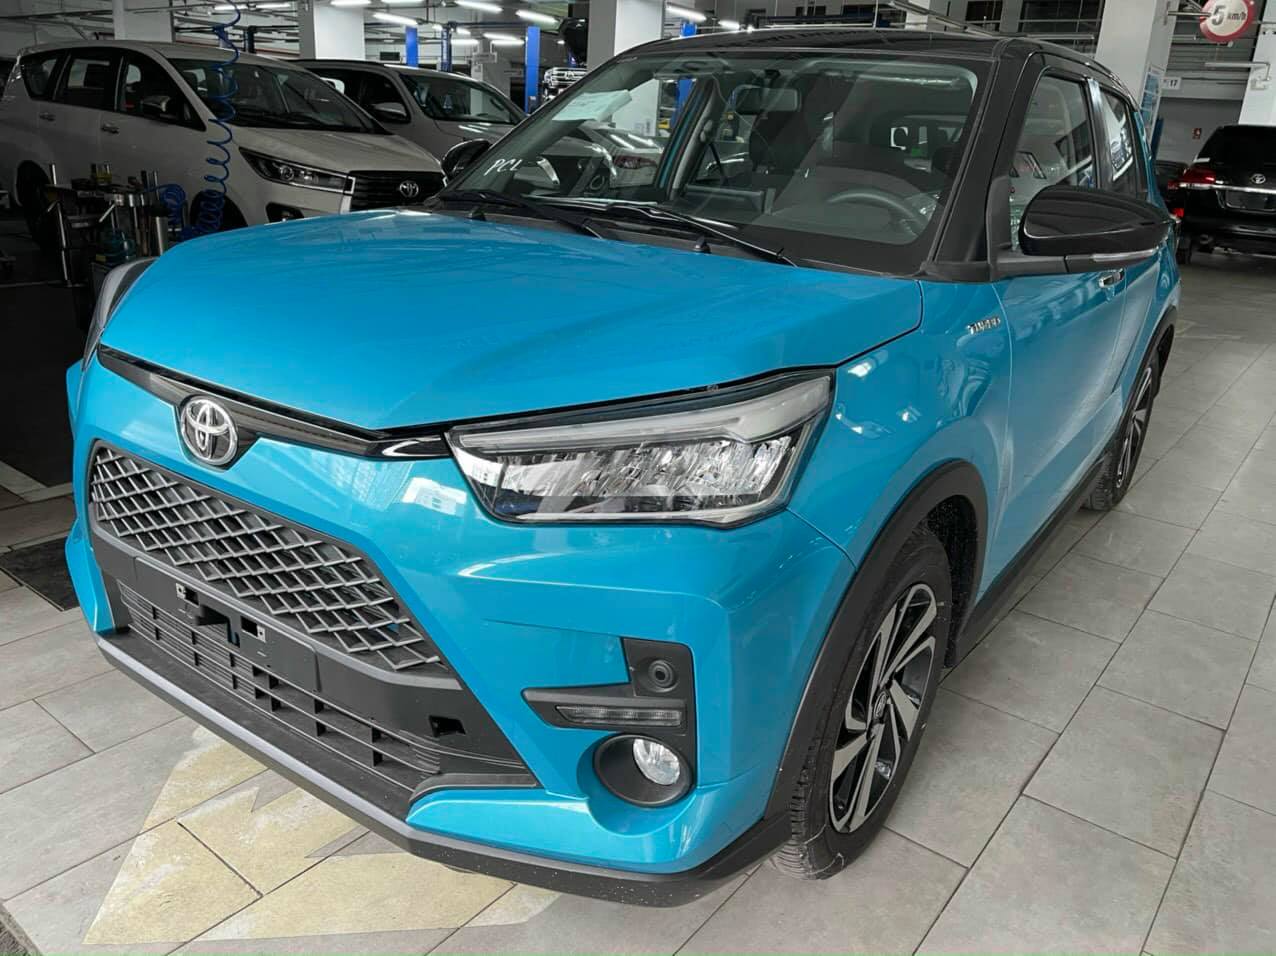 Toyota Raize chọn bán chạy hay làm hình ảnh tại Việt Nam - Bài toán của định giá - Ảnh 2.